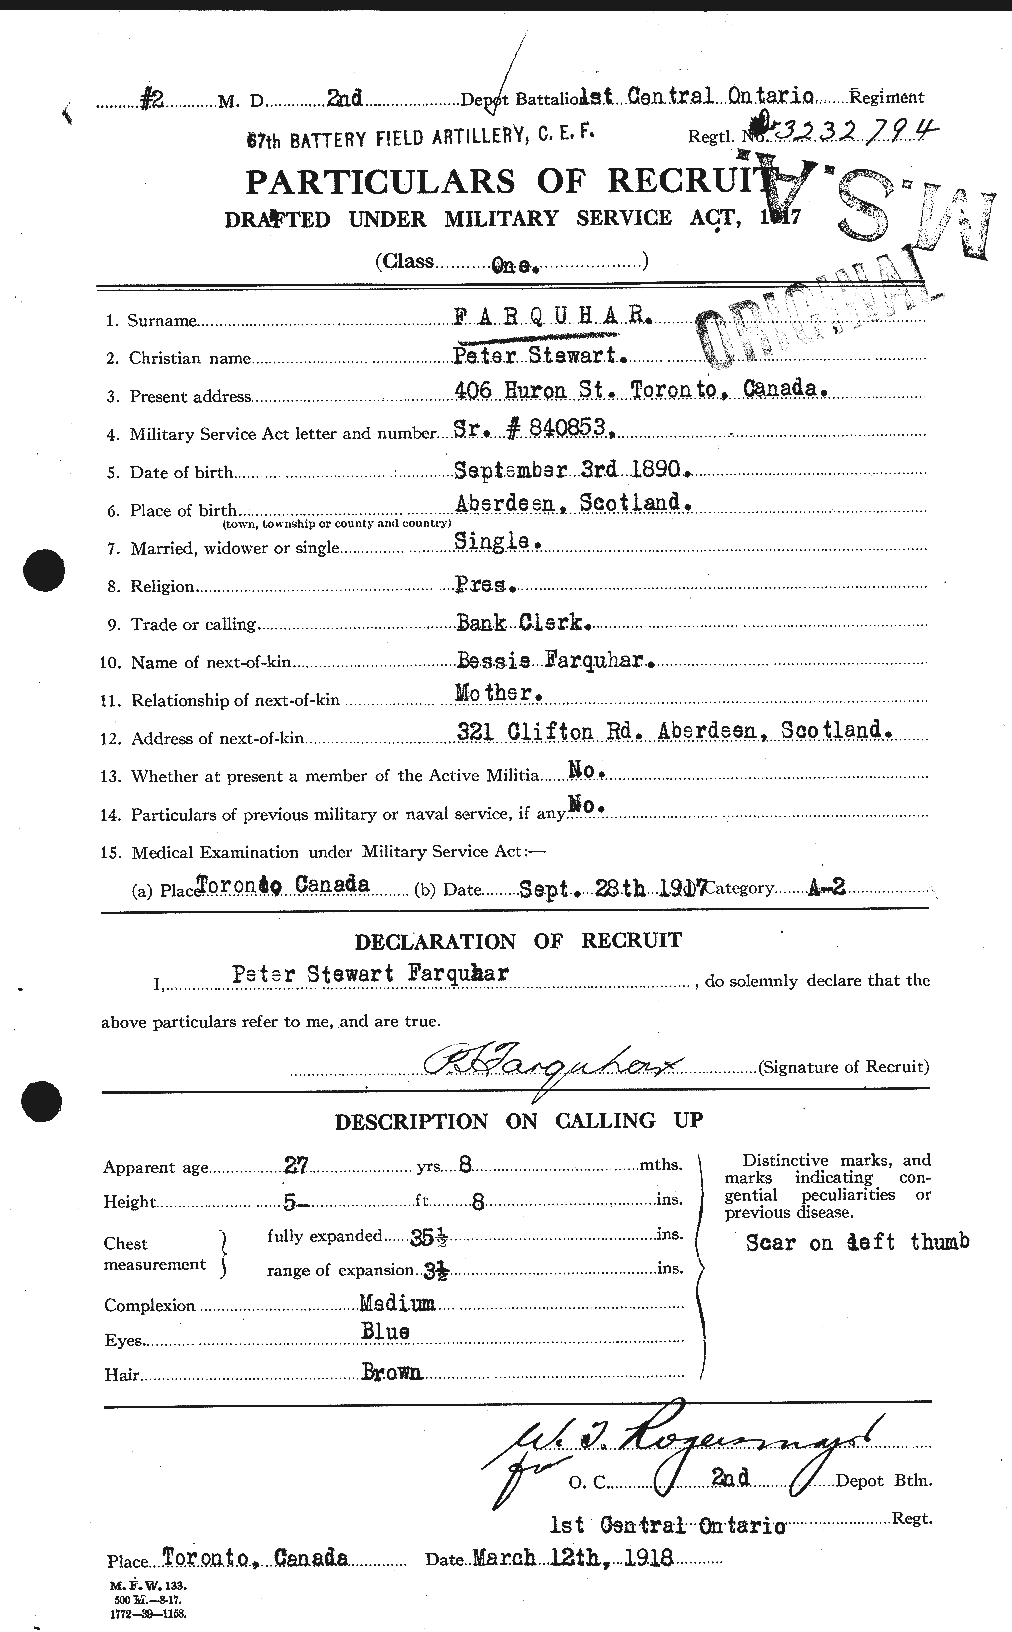 Dossiers du Personnel de la Première Guerre mondiale - CEC 318791a